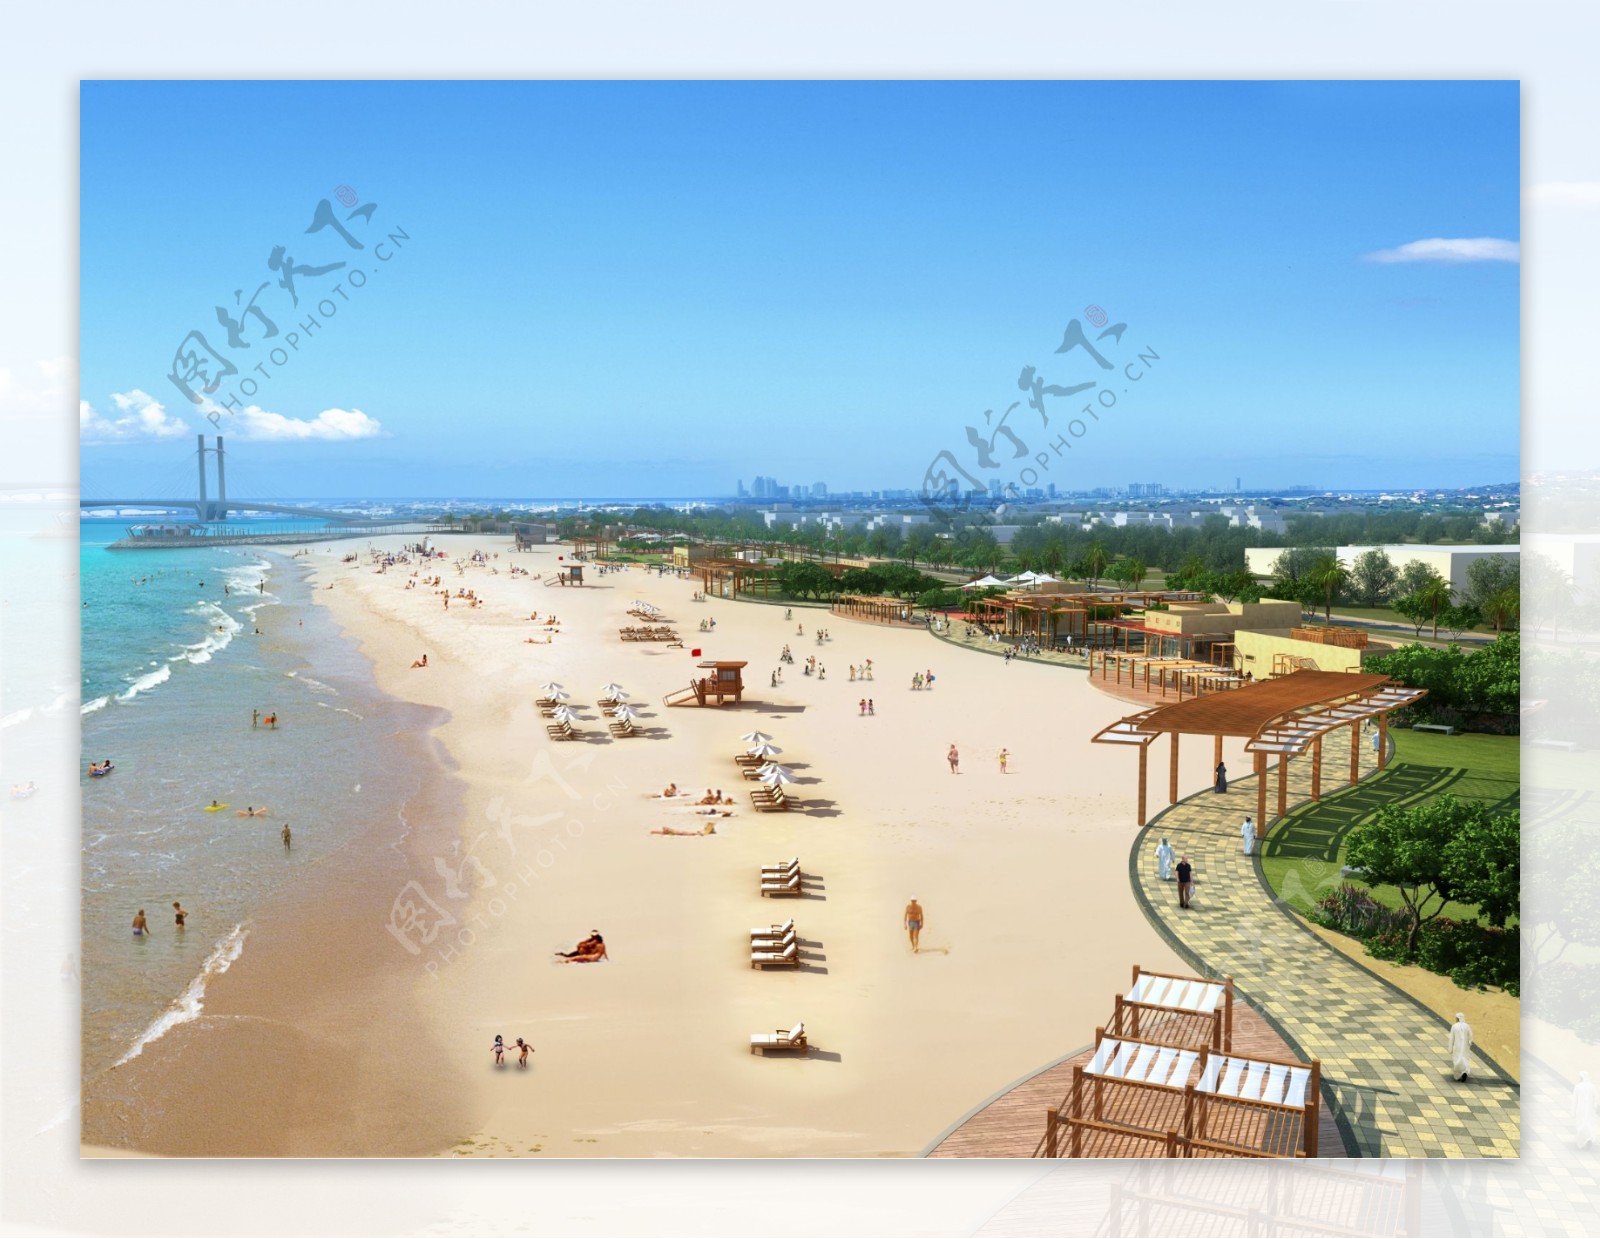 海滩休闲景观设计图片